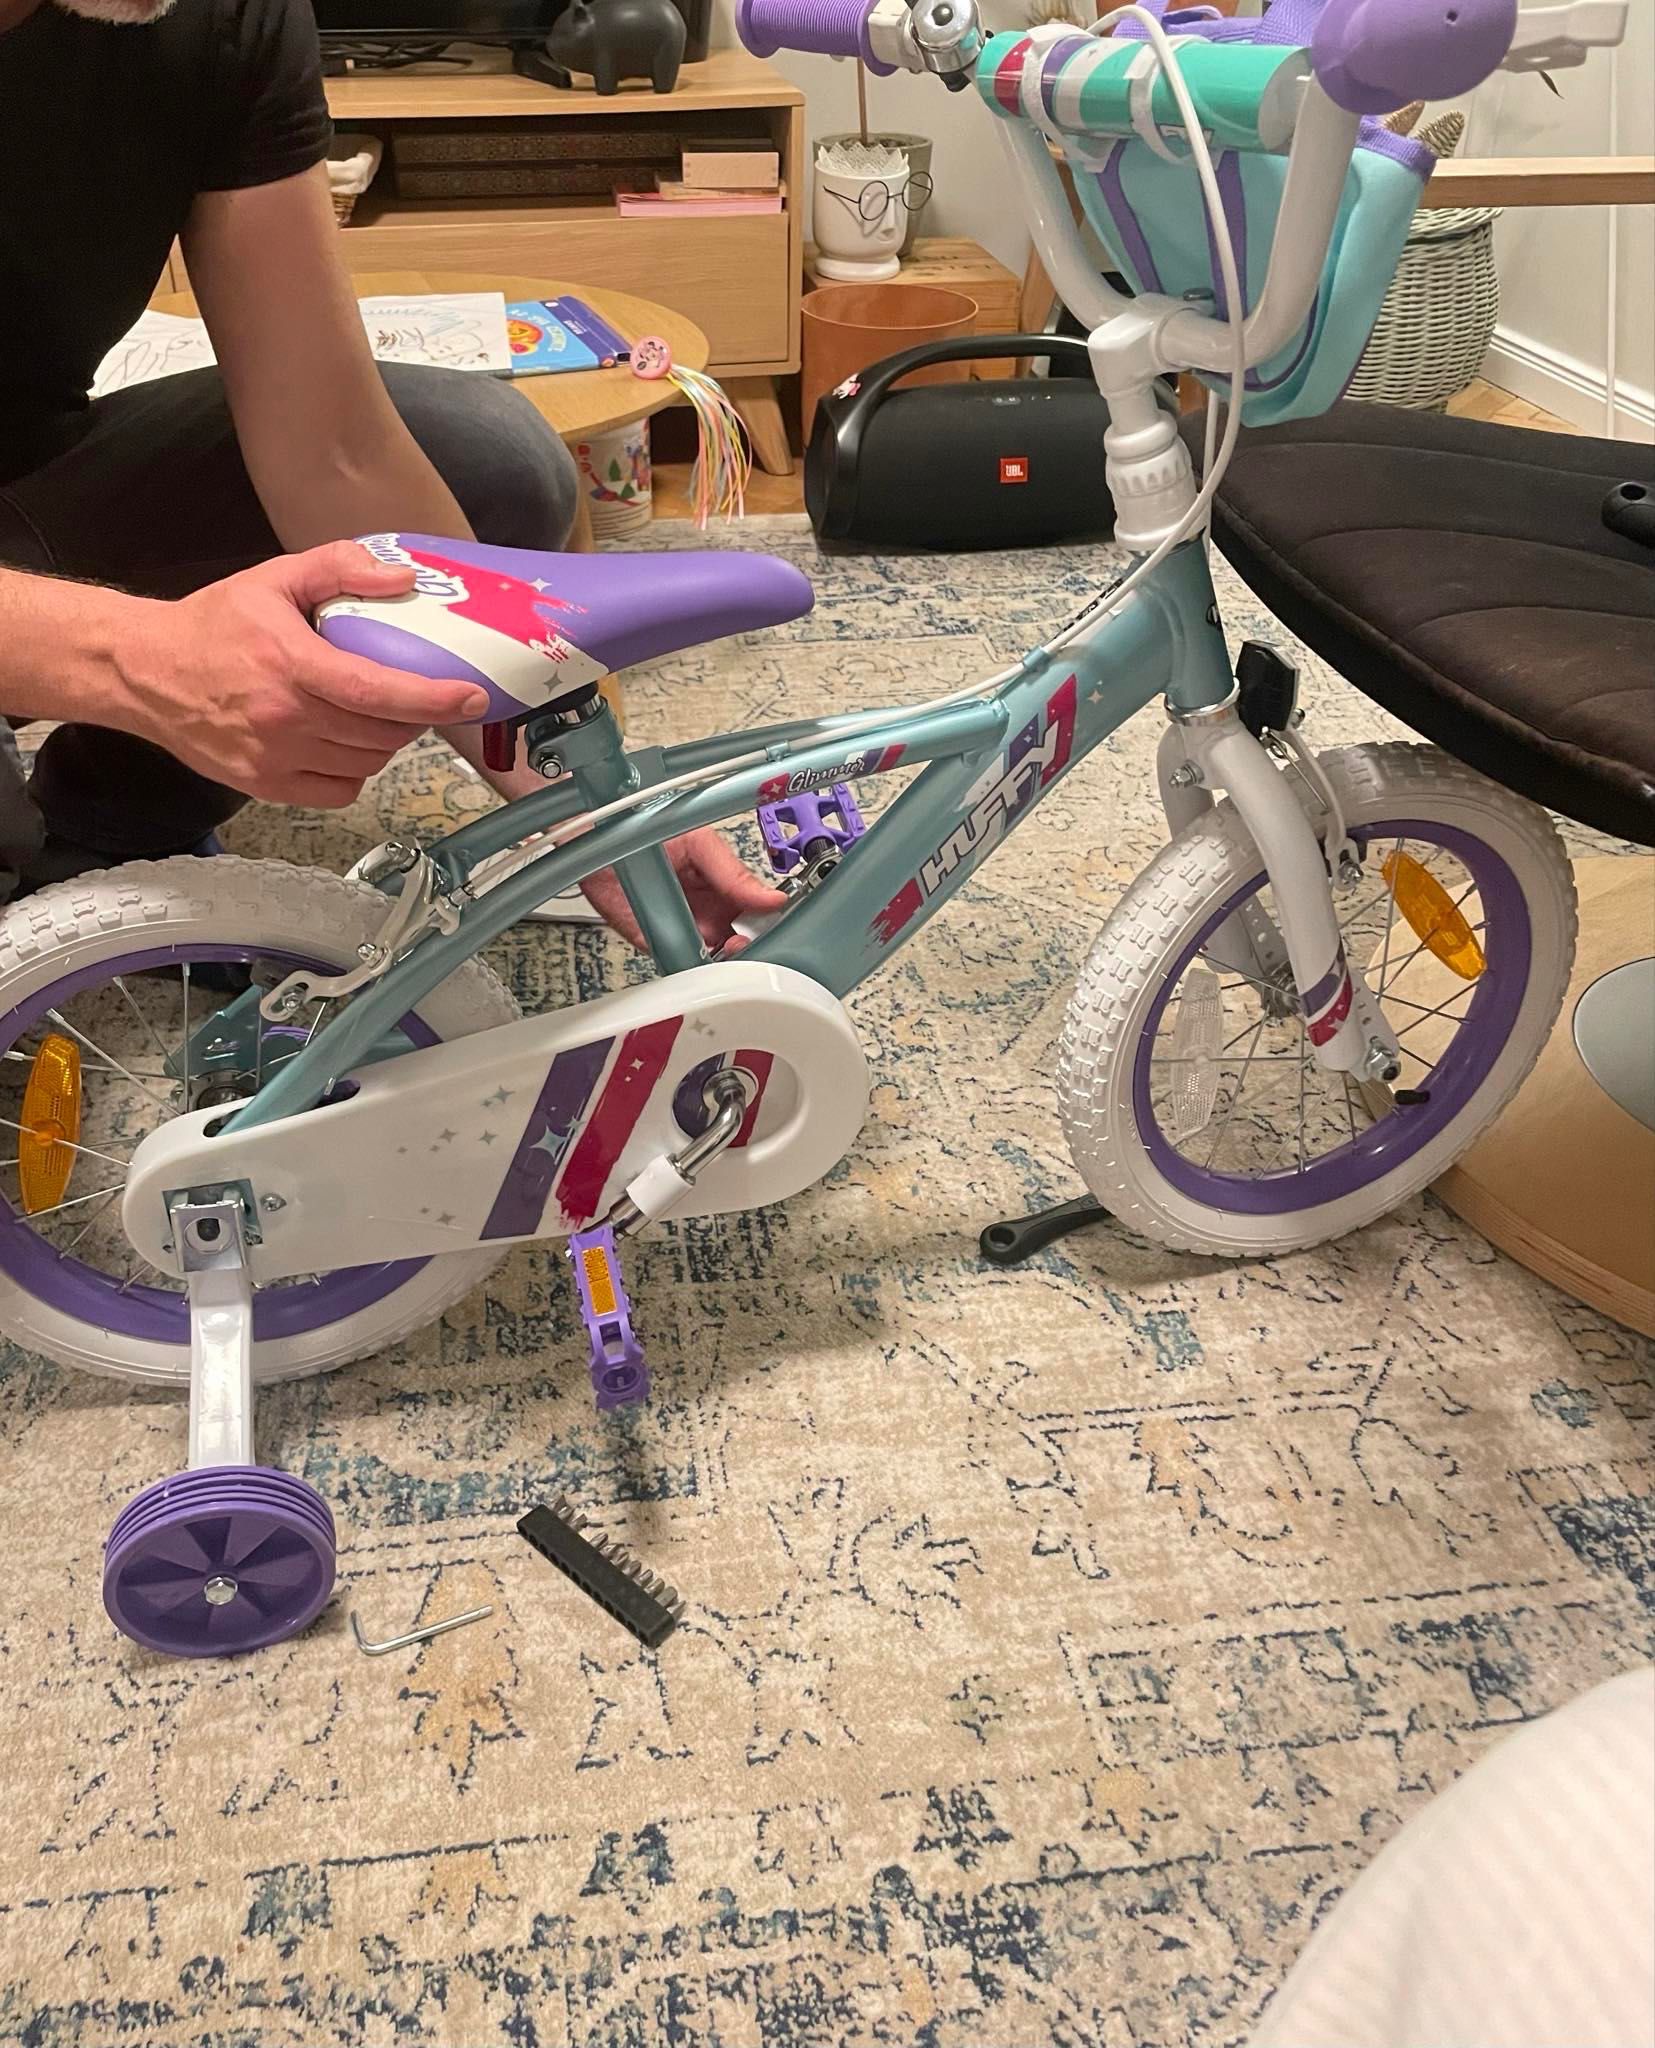 Детско колело за принцеси